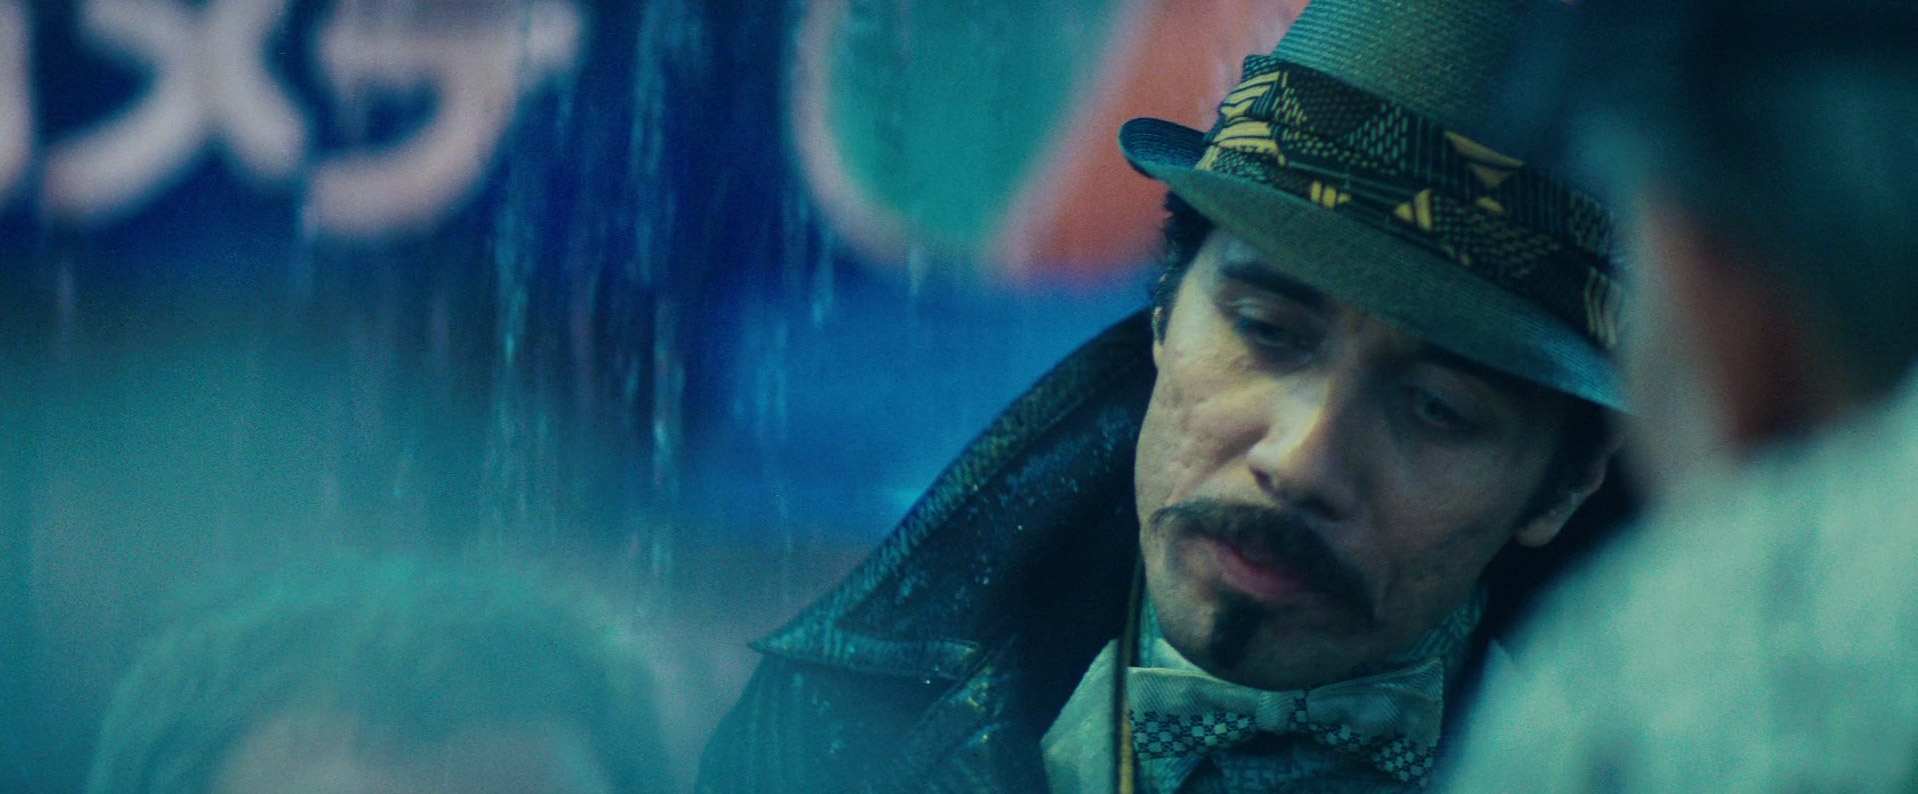 Edward James Olmos in Blade Runner